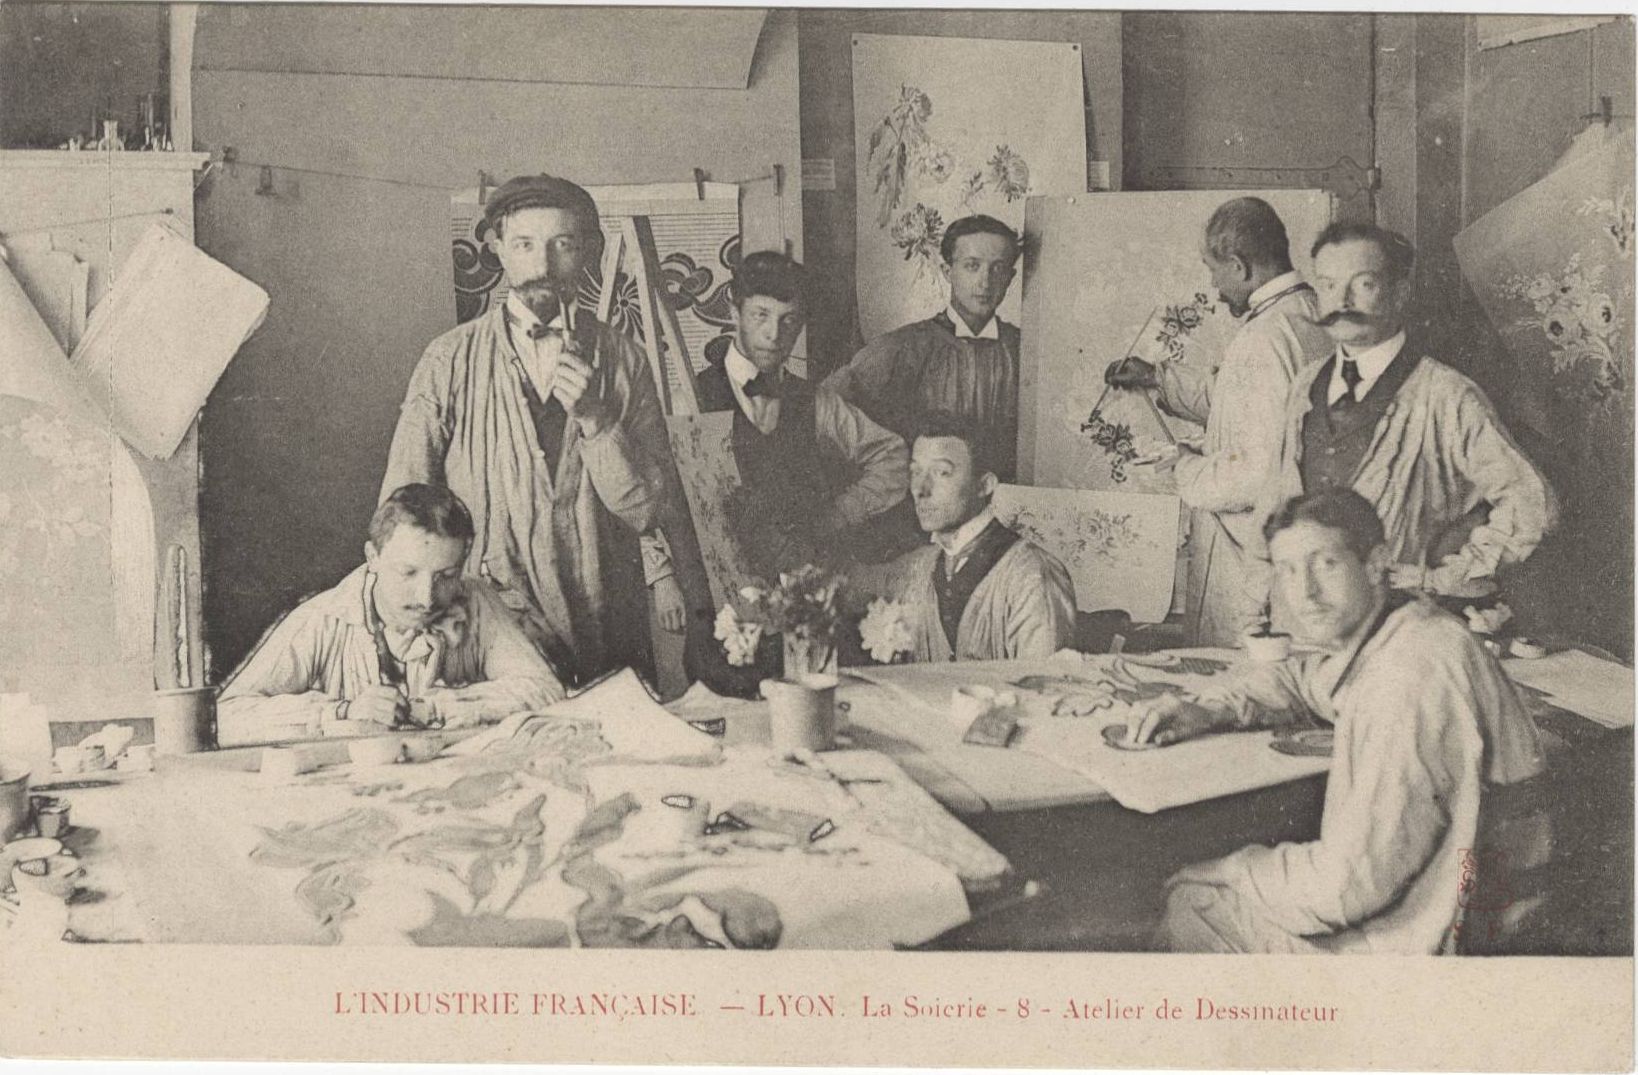 La soierie, atelier du dessinateur : carte postale NB (vers 1910, cote : 4FI/4186)